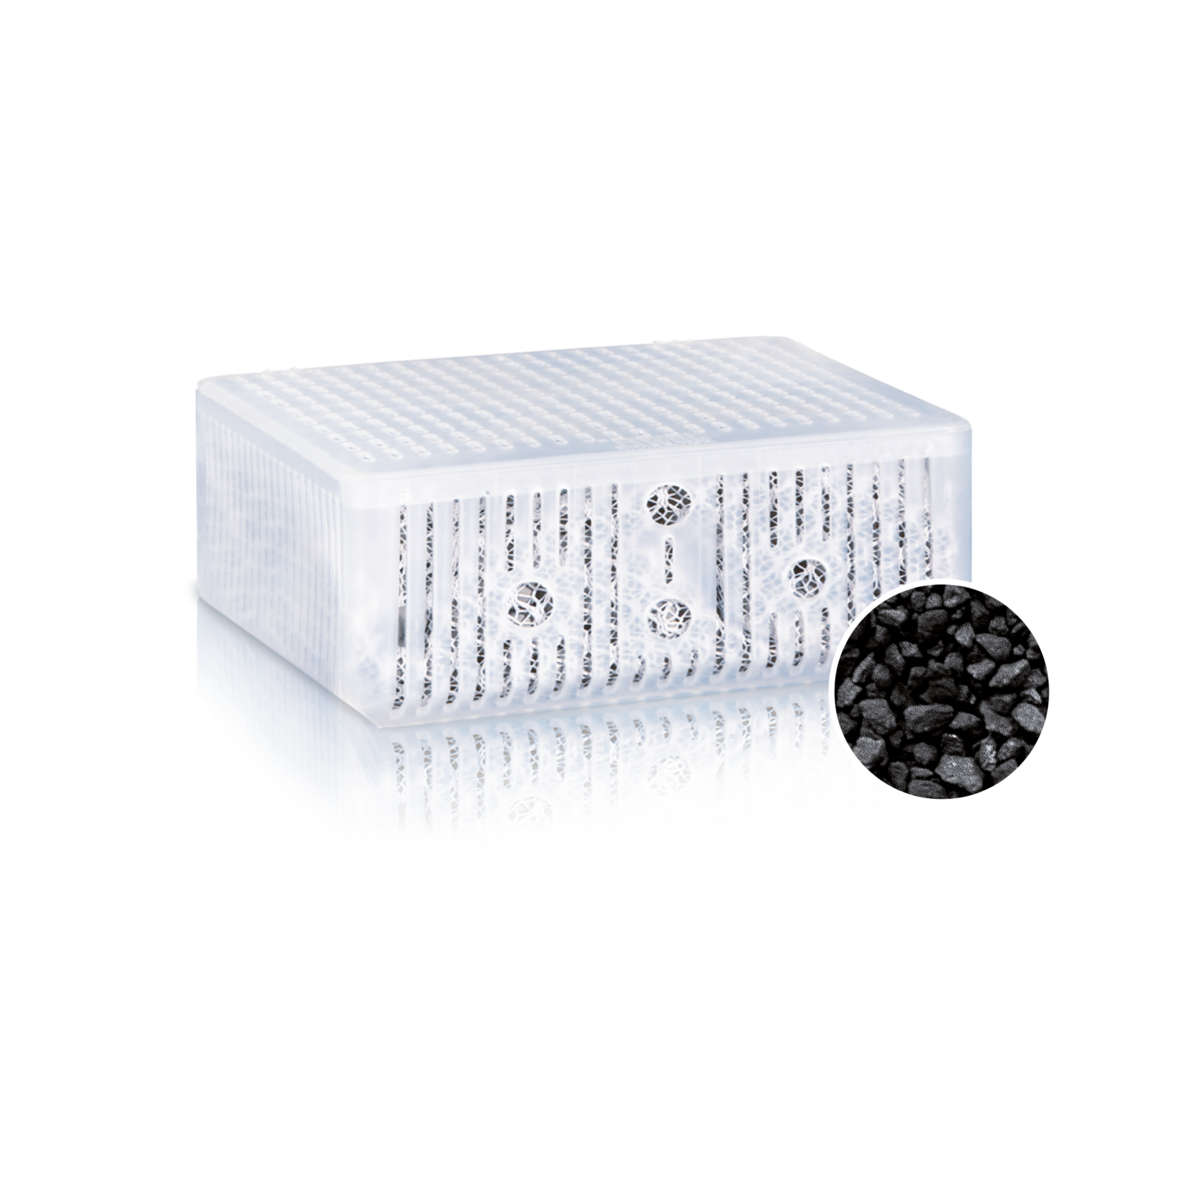 Juwel Filtrační náplň - Carbax Compact/Bioflow 3.0/M